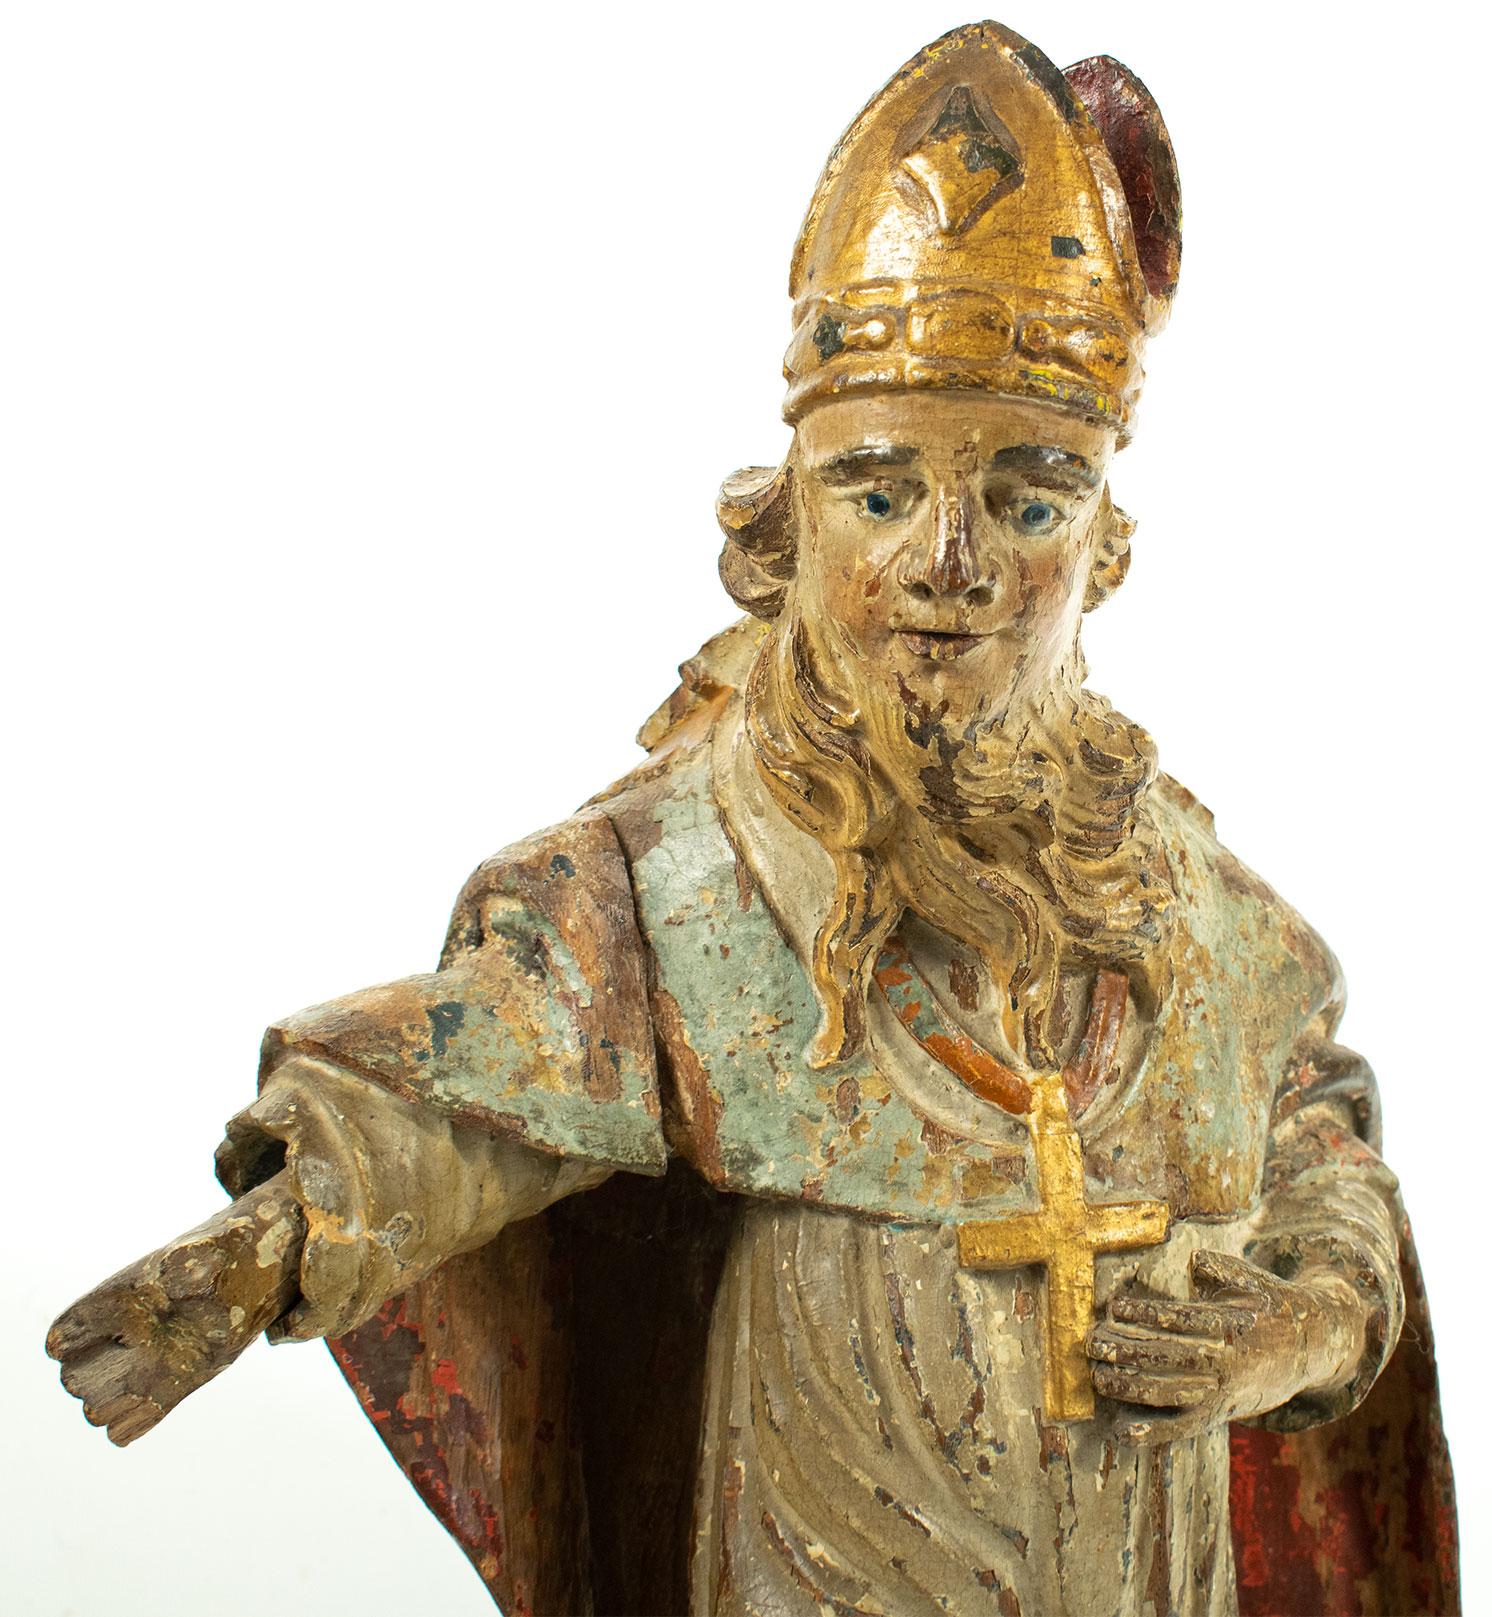 Ein wunderschönes Originalstück aus der Renaissancezeit - eine geschnitzte, polychromierte Holzfigur / Statue des Heiligen Franziskus.

Dieses Stück wurde in Frankreich gefunden, stammt aber höchstwahrscheinlich aus dem Italien des 16.